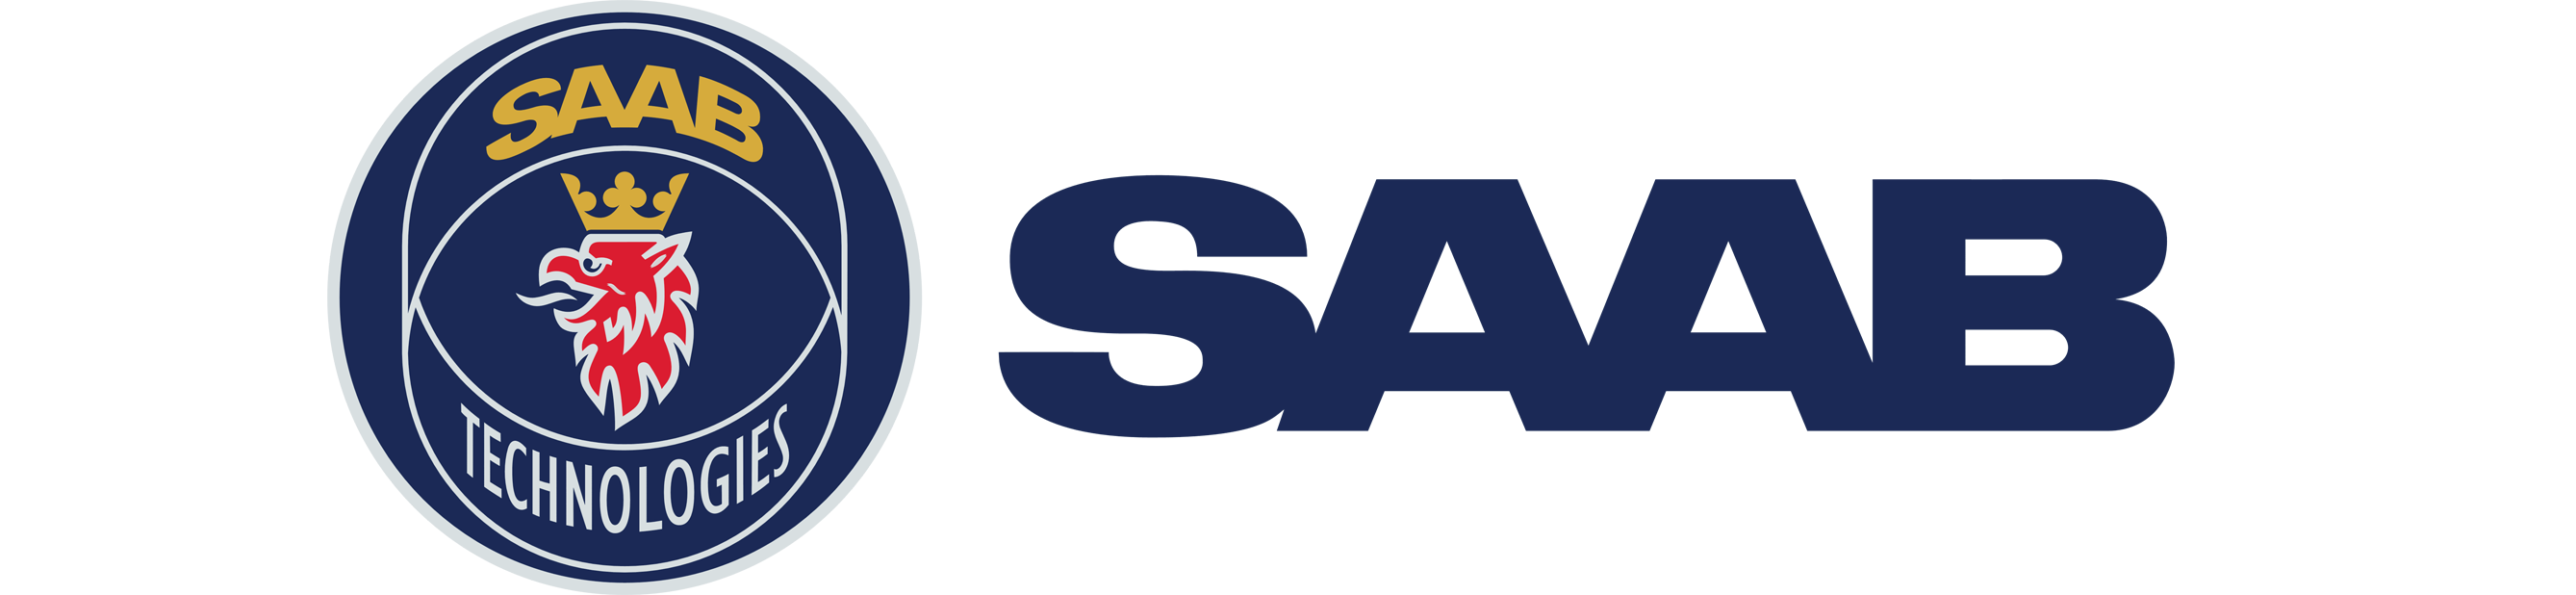 Logo of SAAB